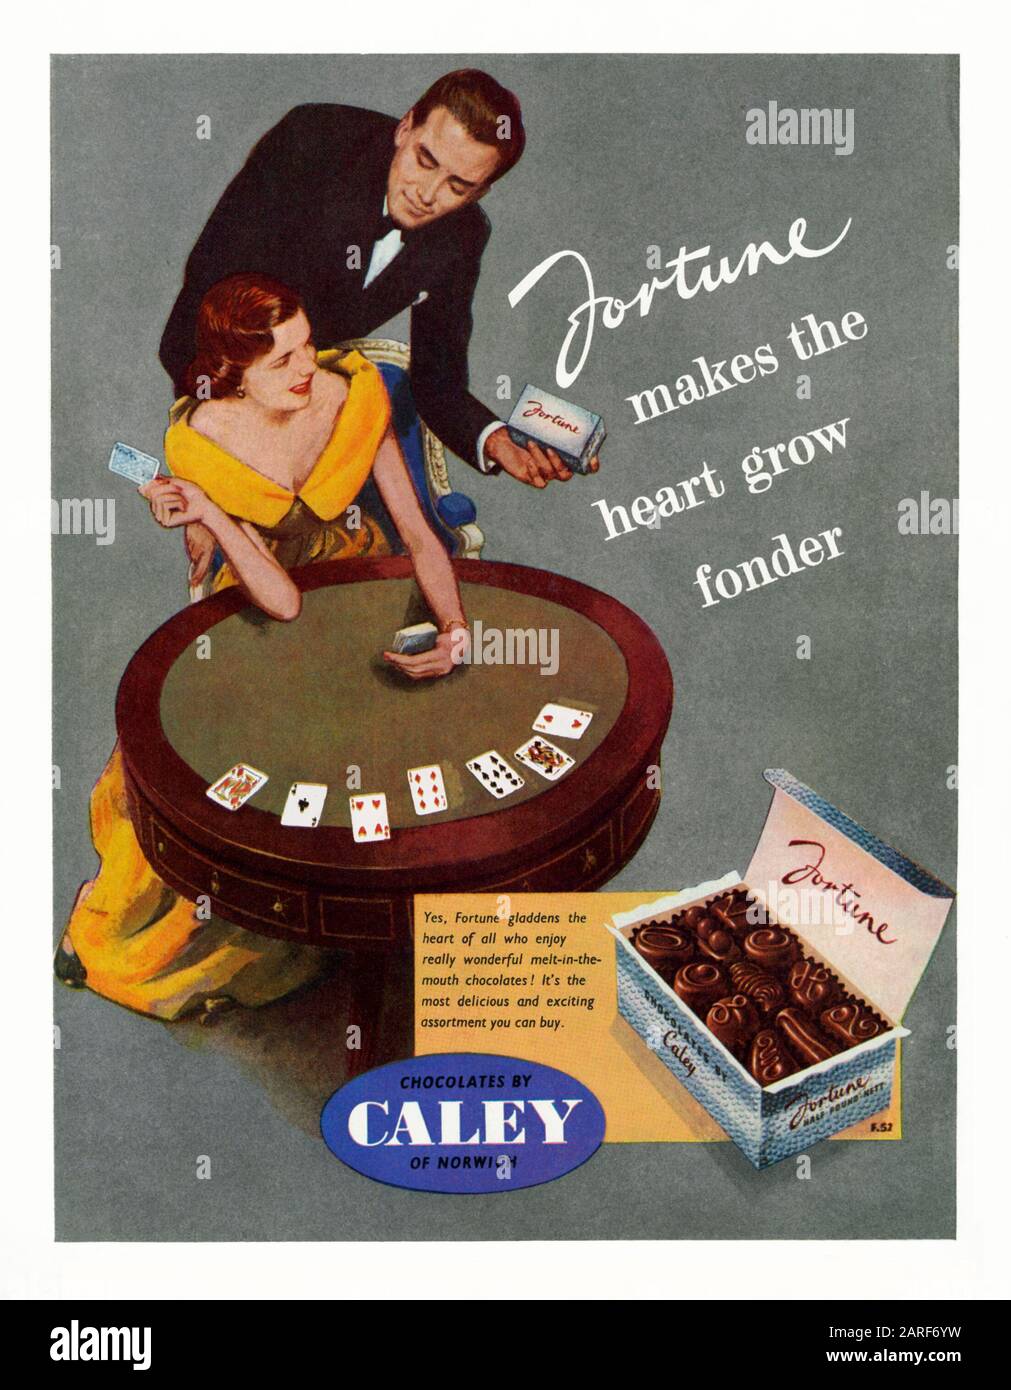 Pubblicità per i cioccolatini Caley, 1951. Questo è apparso nel libro guida ufficiale per il Festival of Britain Pleasure Gardens, Battersea Park, Londra, 1951. L'illustrazione mostra una sofisticata coppia di carte da gioco e una scatola di cioccolatini 'Fortune'. Albert Caley iniziò la società a Norwich, Norfolk, Inghilterra, Regno Unito nel 1863. I prodotti di cacao e cioccolato sono comparsi nella 1880s. Nel 1929 Unilever acquistò Caley's. Mackintosh's ha acquistato l'azienda di cioccolato da Unilever nel 1932. Nel 1969 si fuse con Rowntree's per formare la Pasticceria Rowntree Mackintosh, che fu assunta da Nestlé nel 1988. Foto Stock